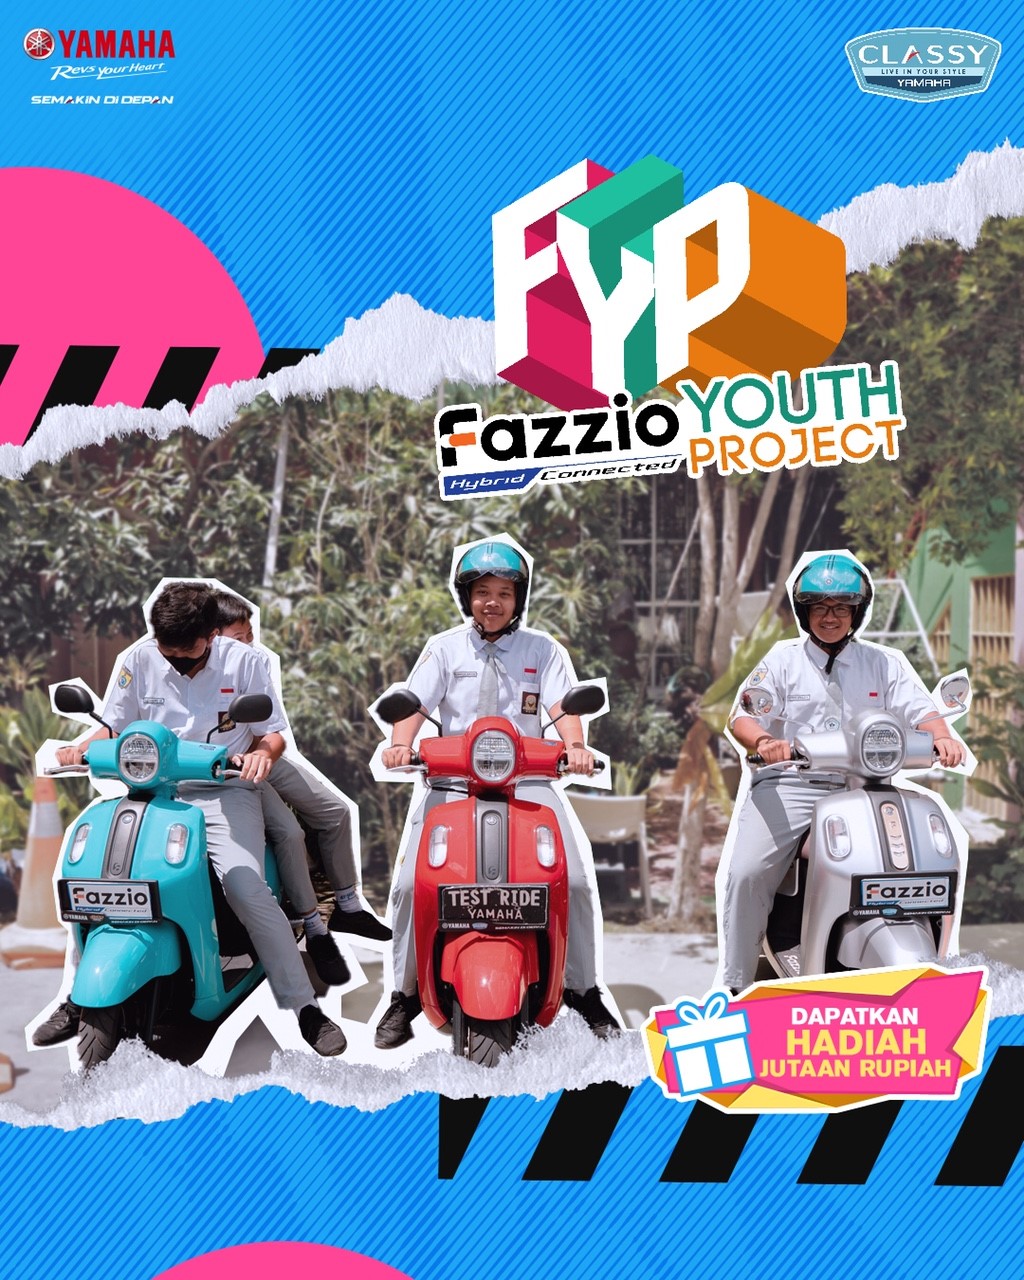 Yamaha Rangkul Generasi Muda melalui Fazzio Youth Project, Ini Tanggapan Para Pelajar  